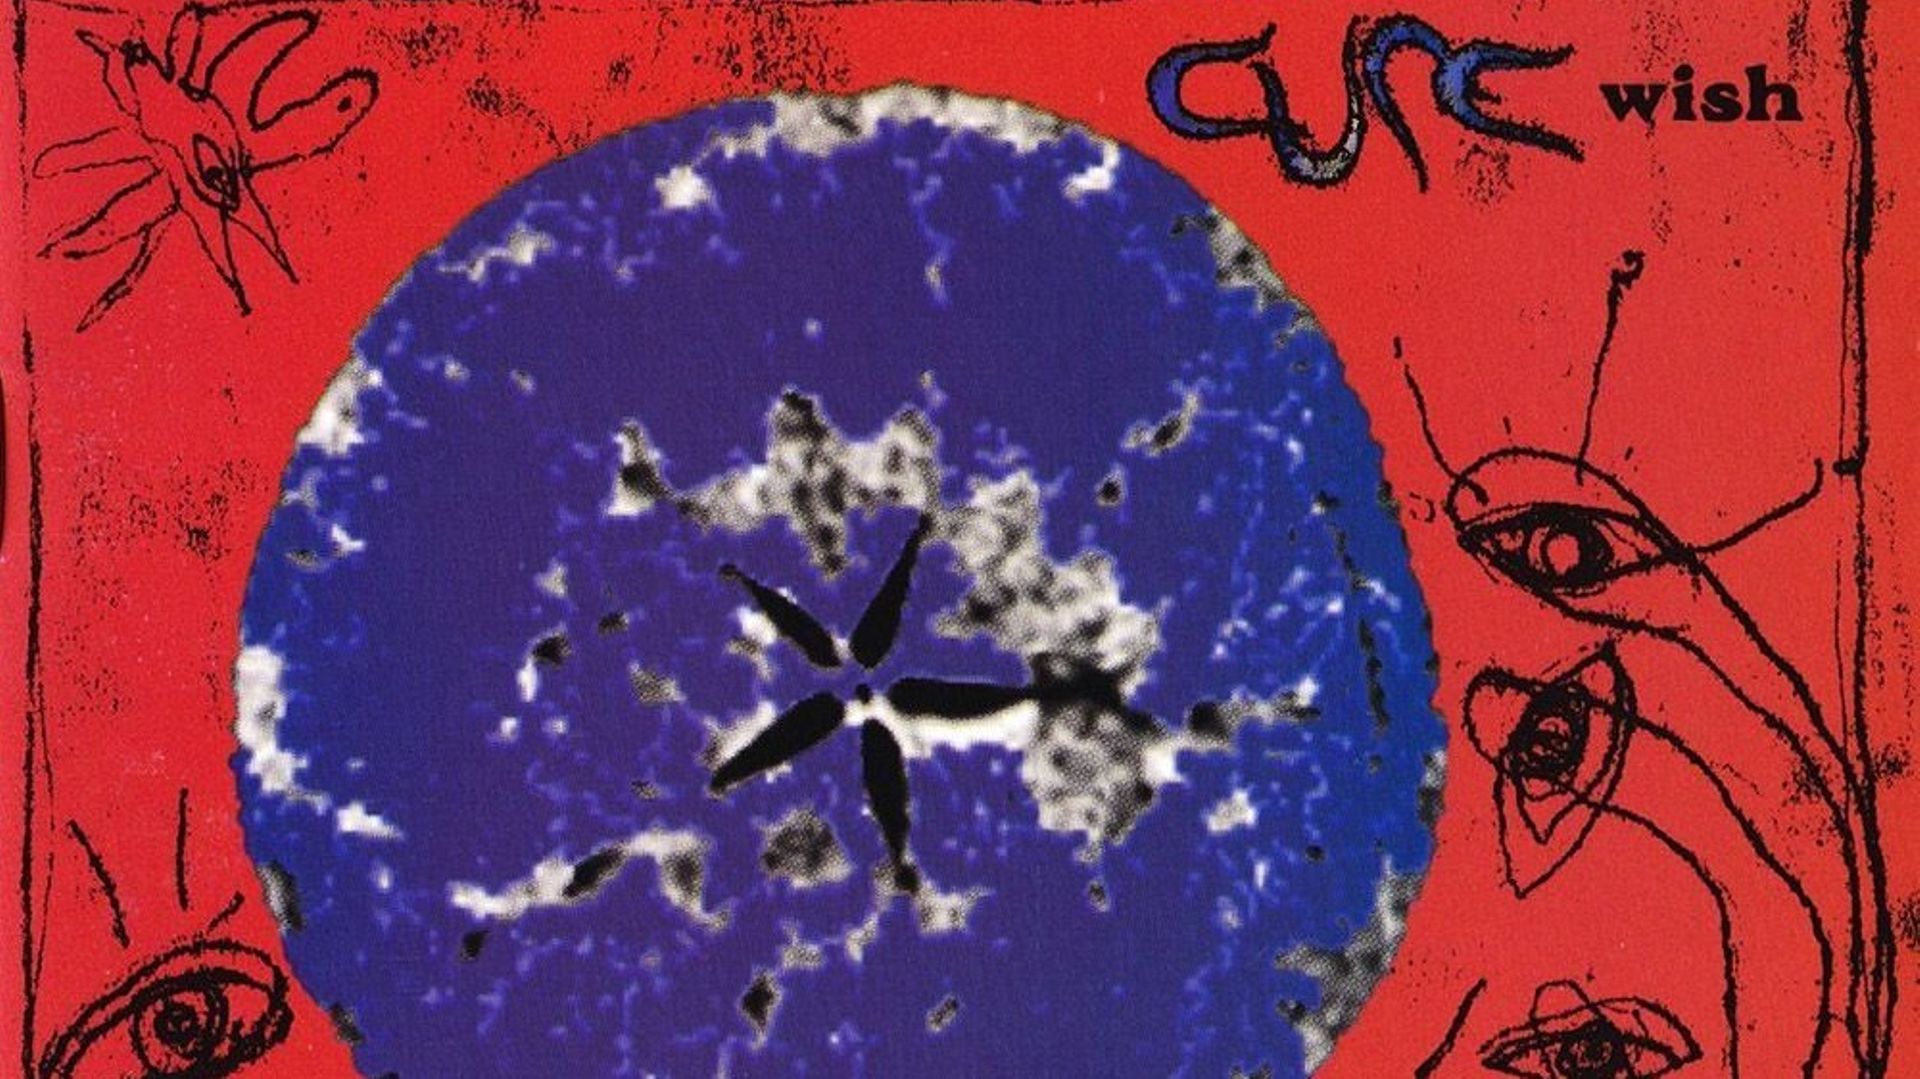 Wish a 30 ans, le dernier grand album de Cure ?